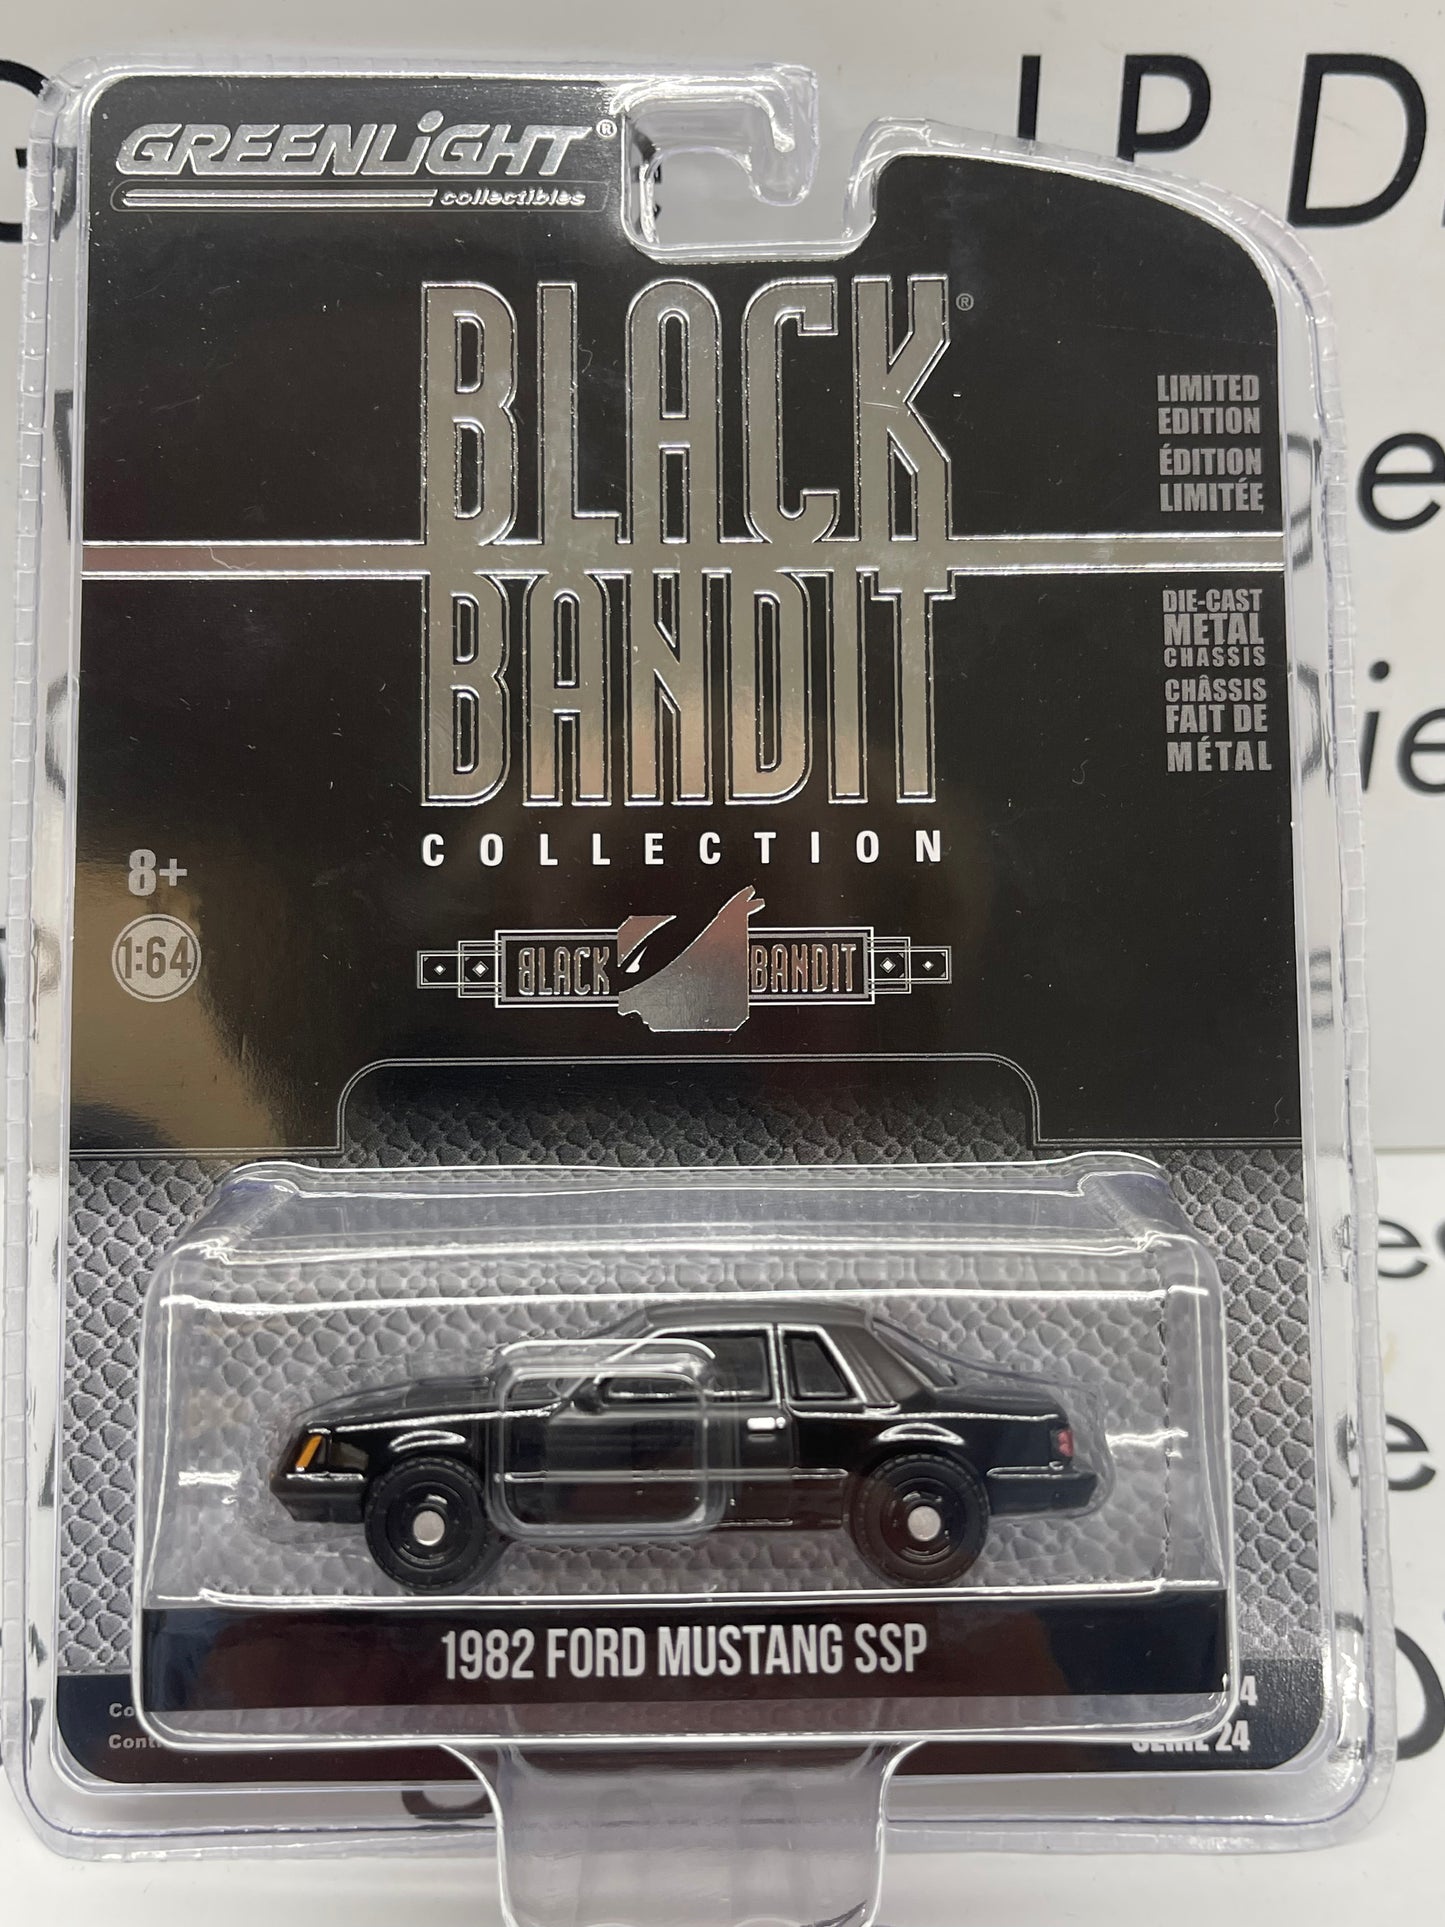 GREENLIGHT 1982 Ford Mustang SSP “Black Bandit” 1:64 Diecast